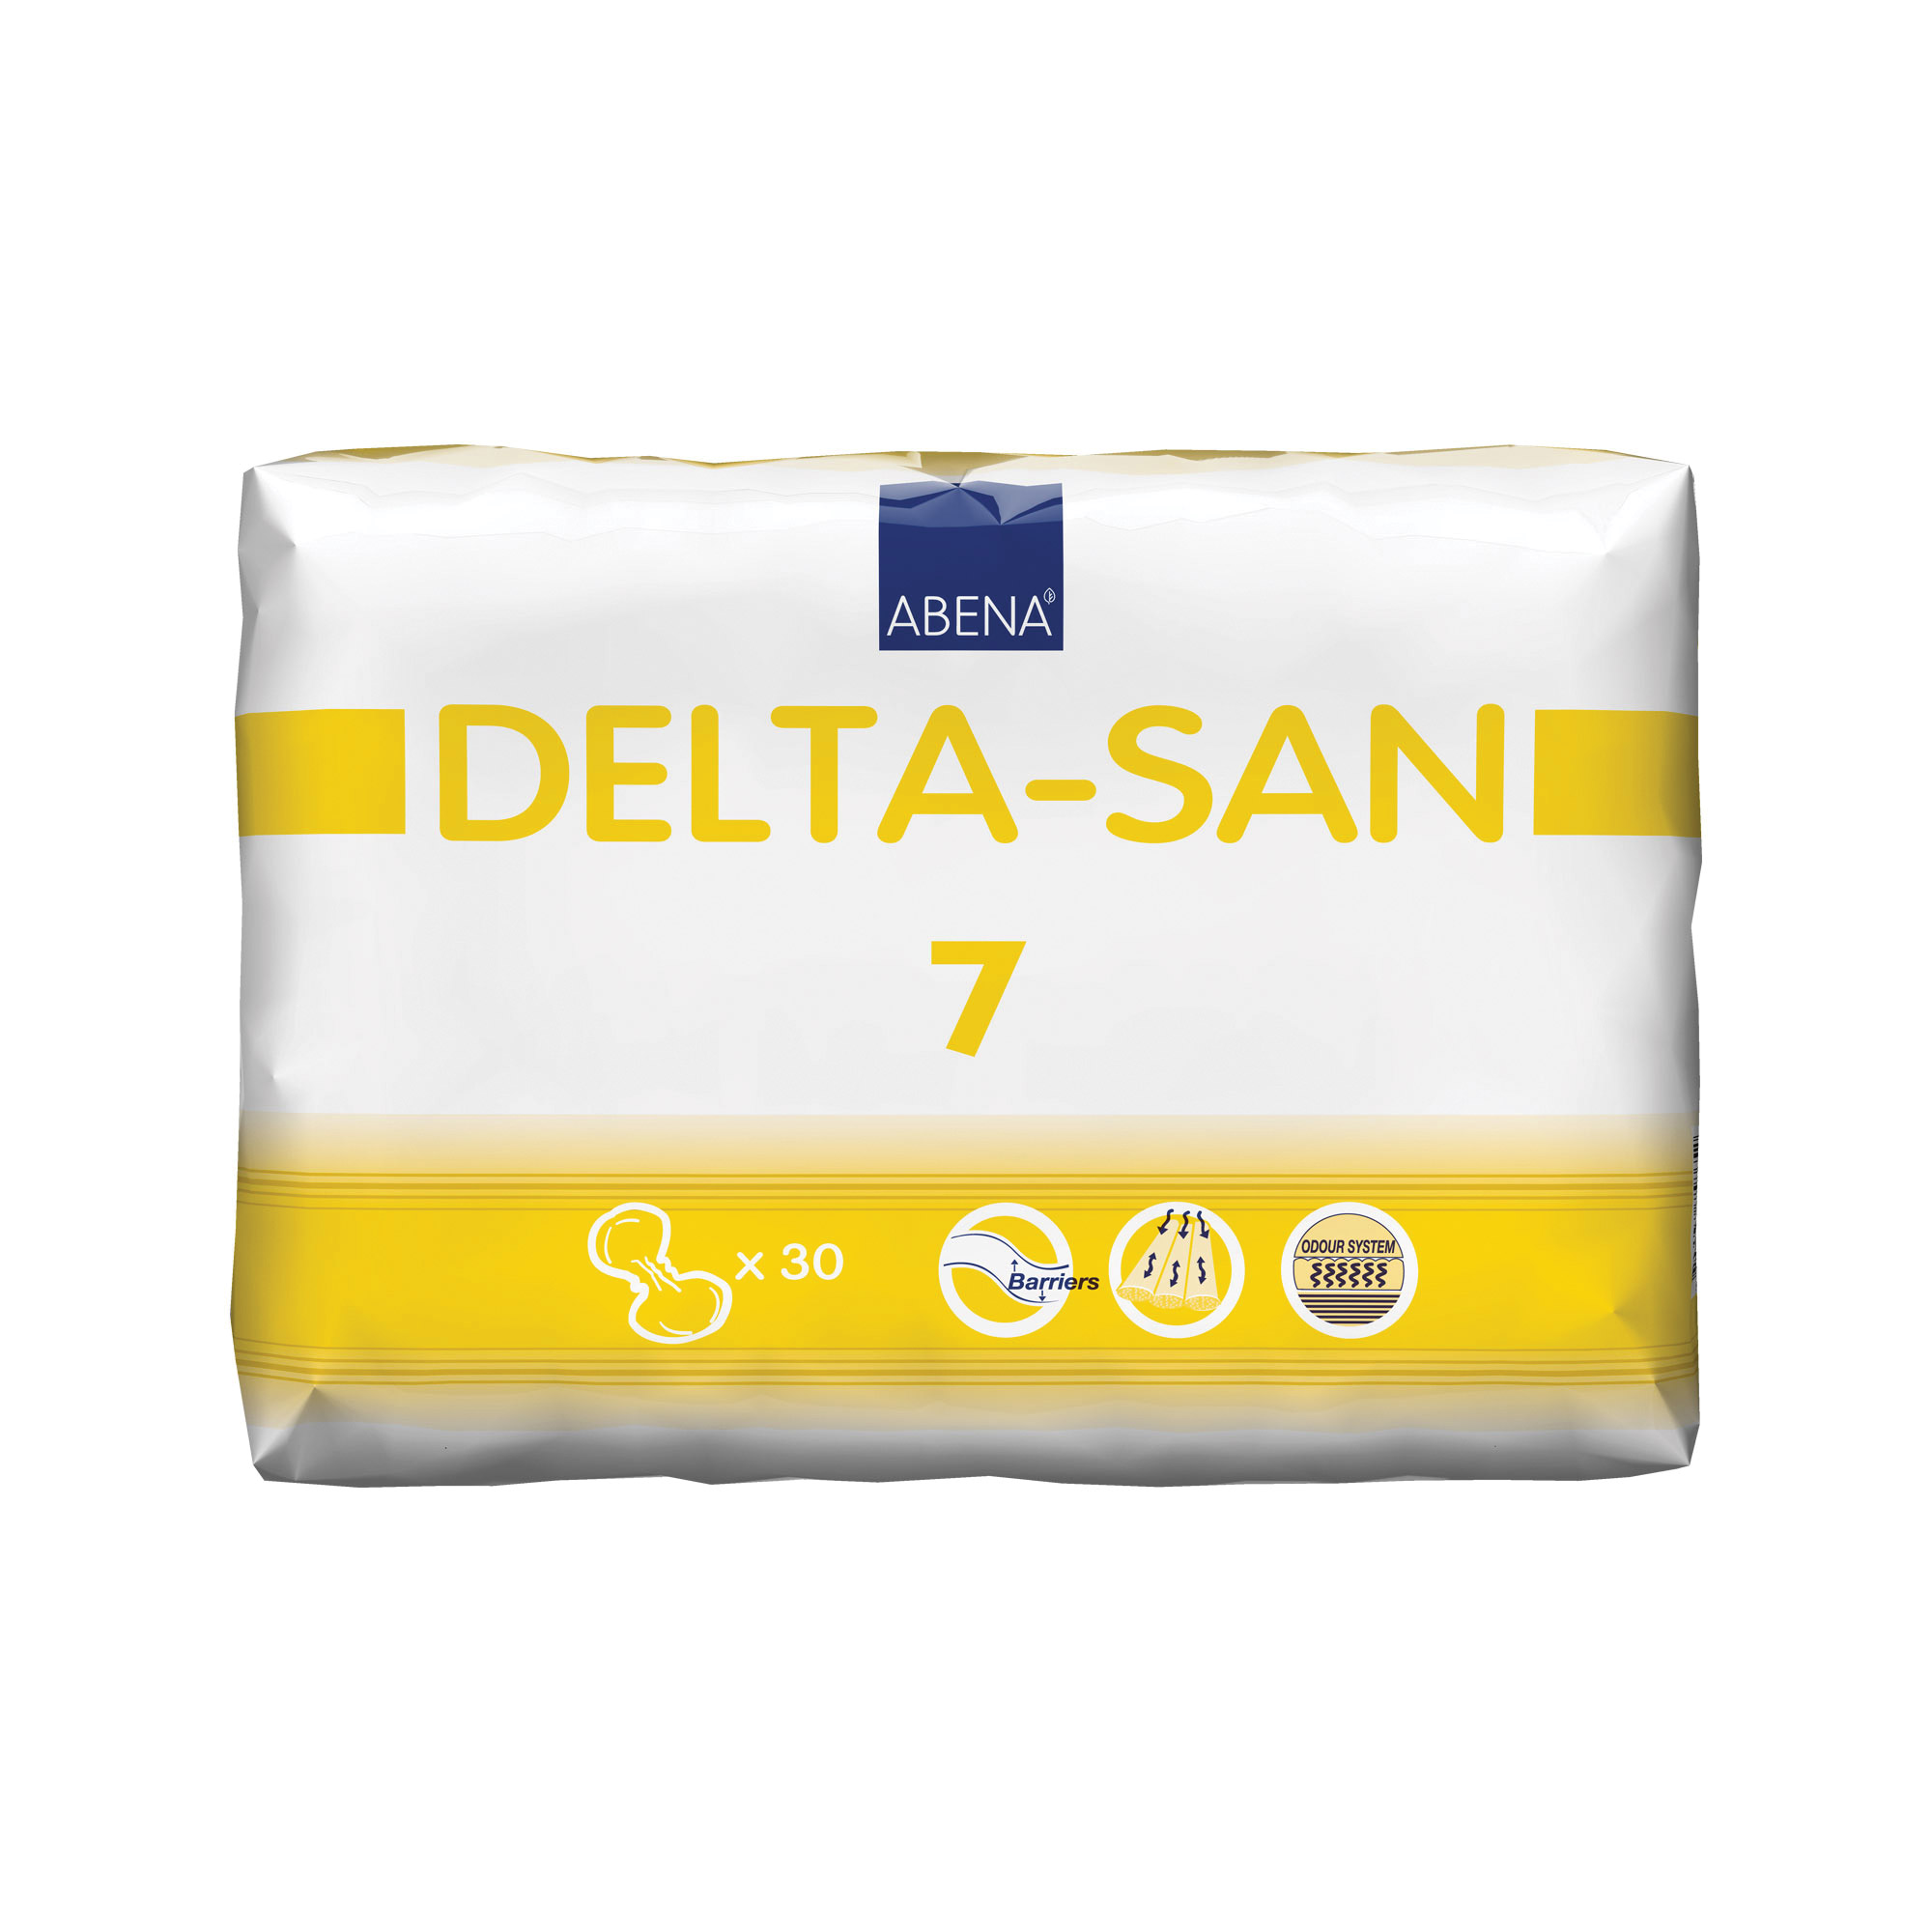 Delta-San 7 - 30 Pack